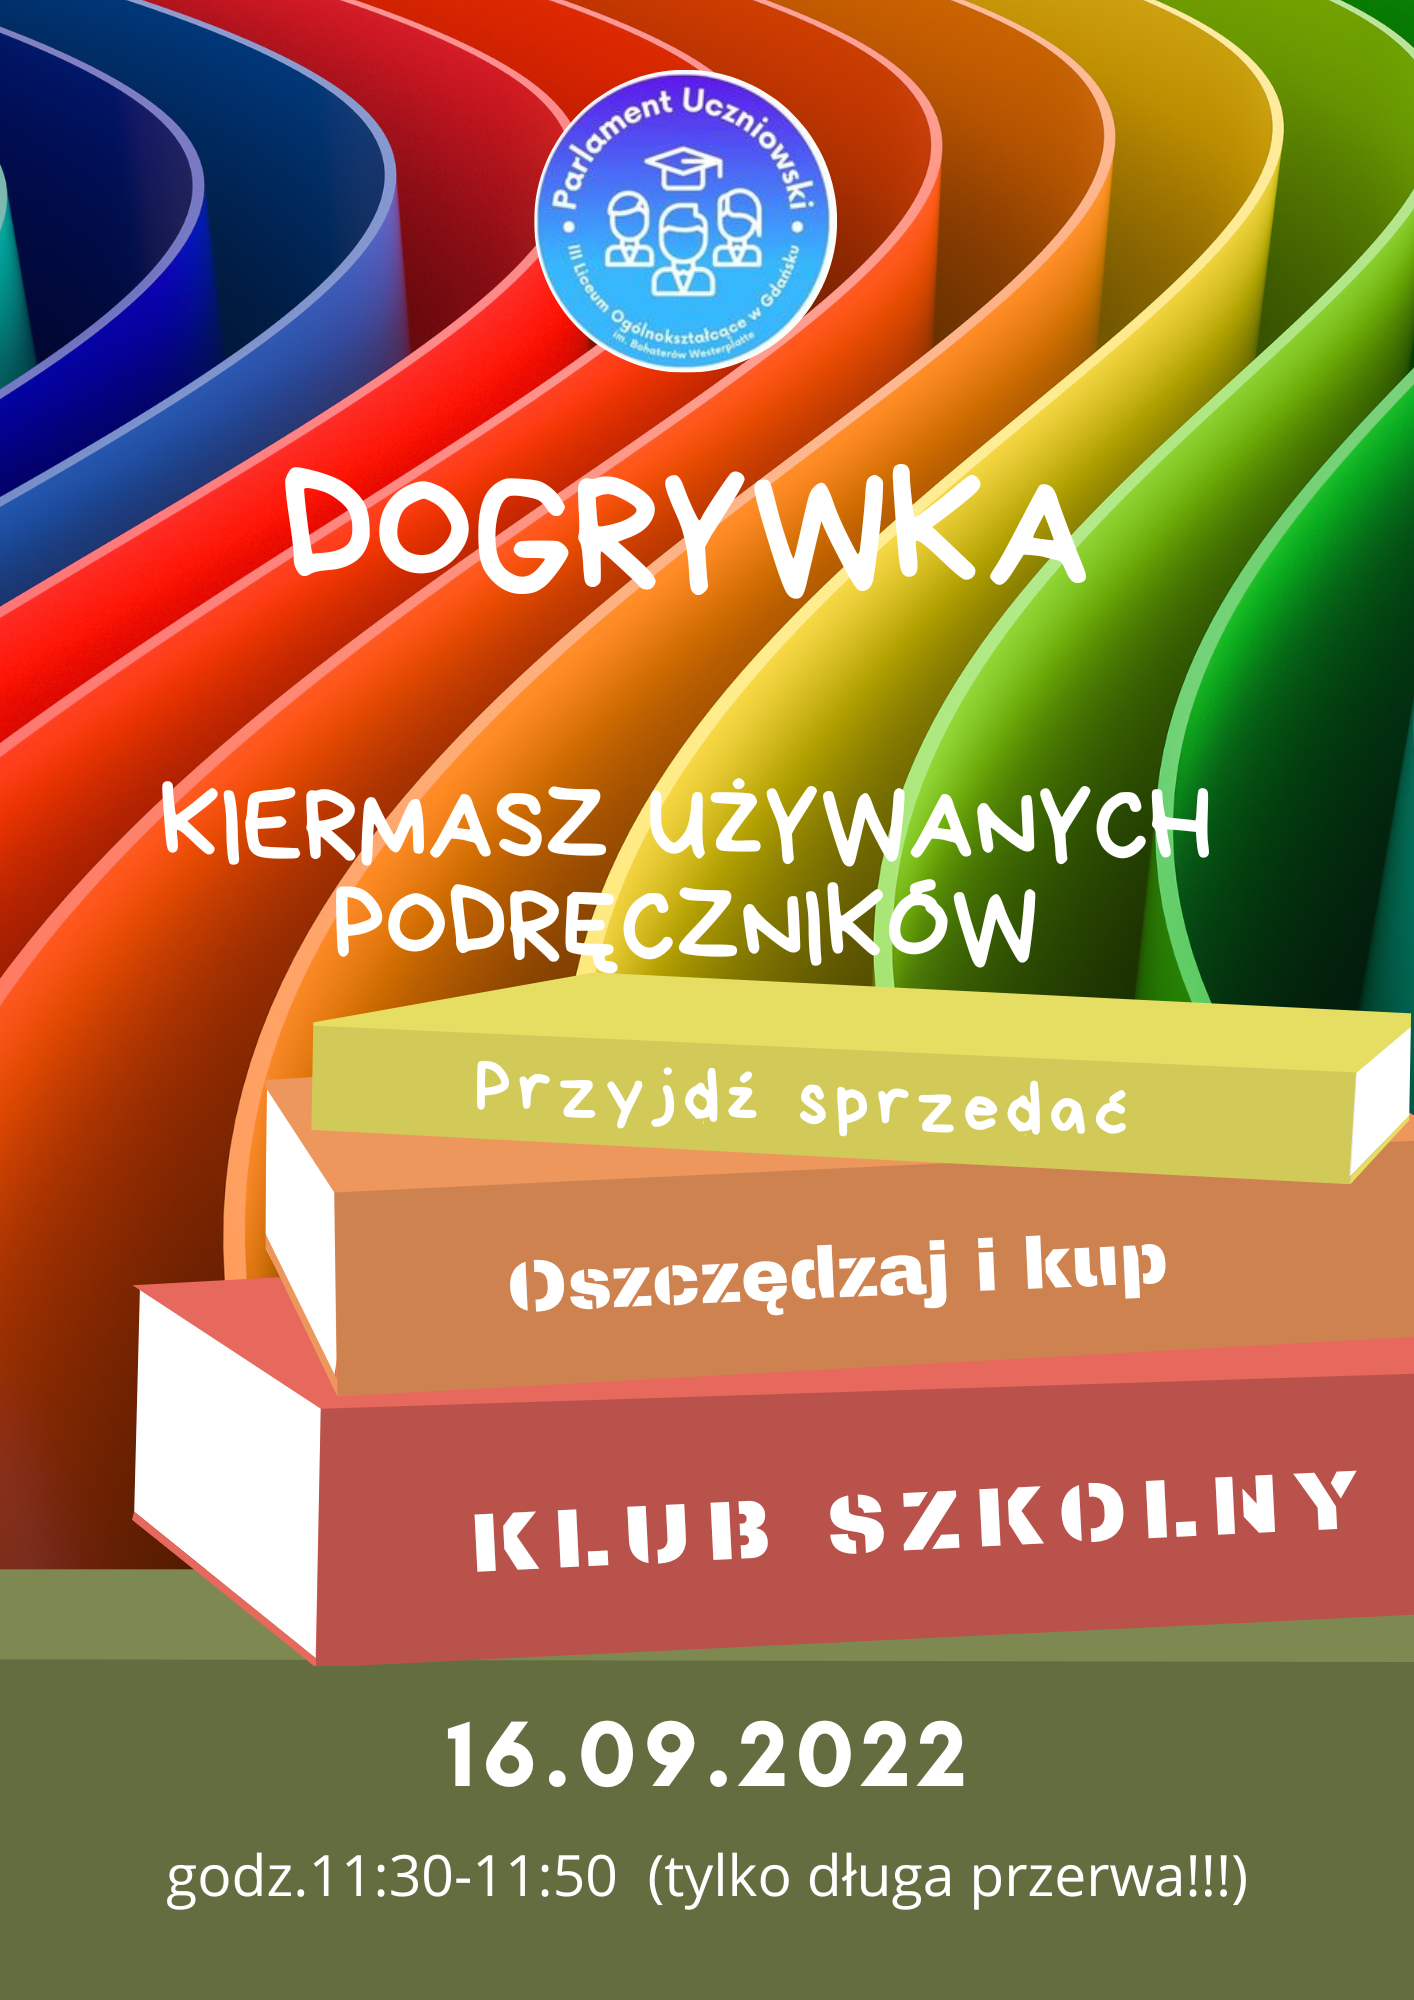 dogrywka-kiermasz-podrecznikow.png